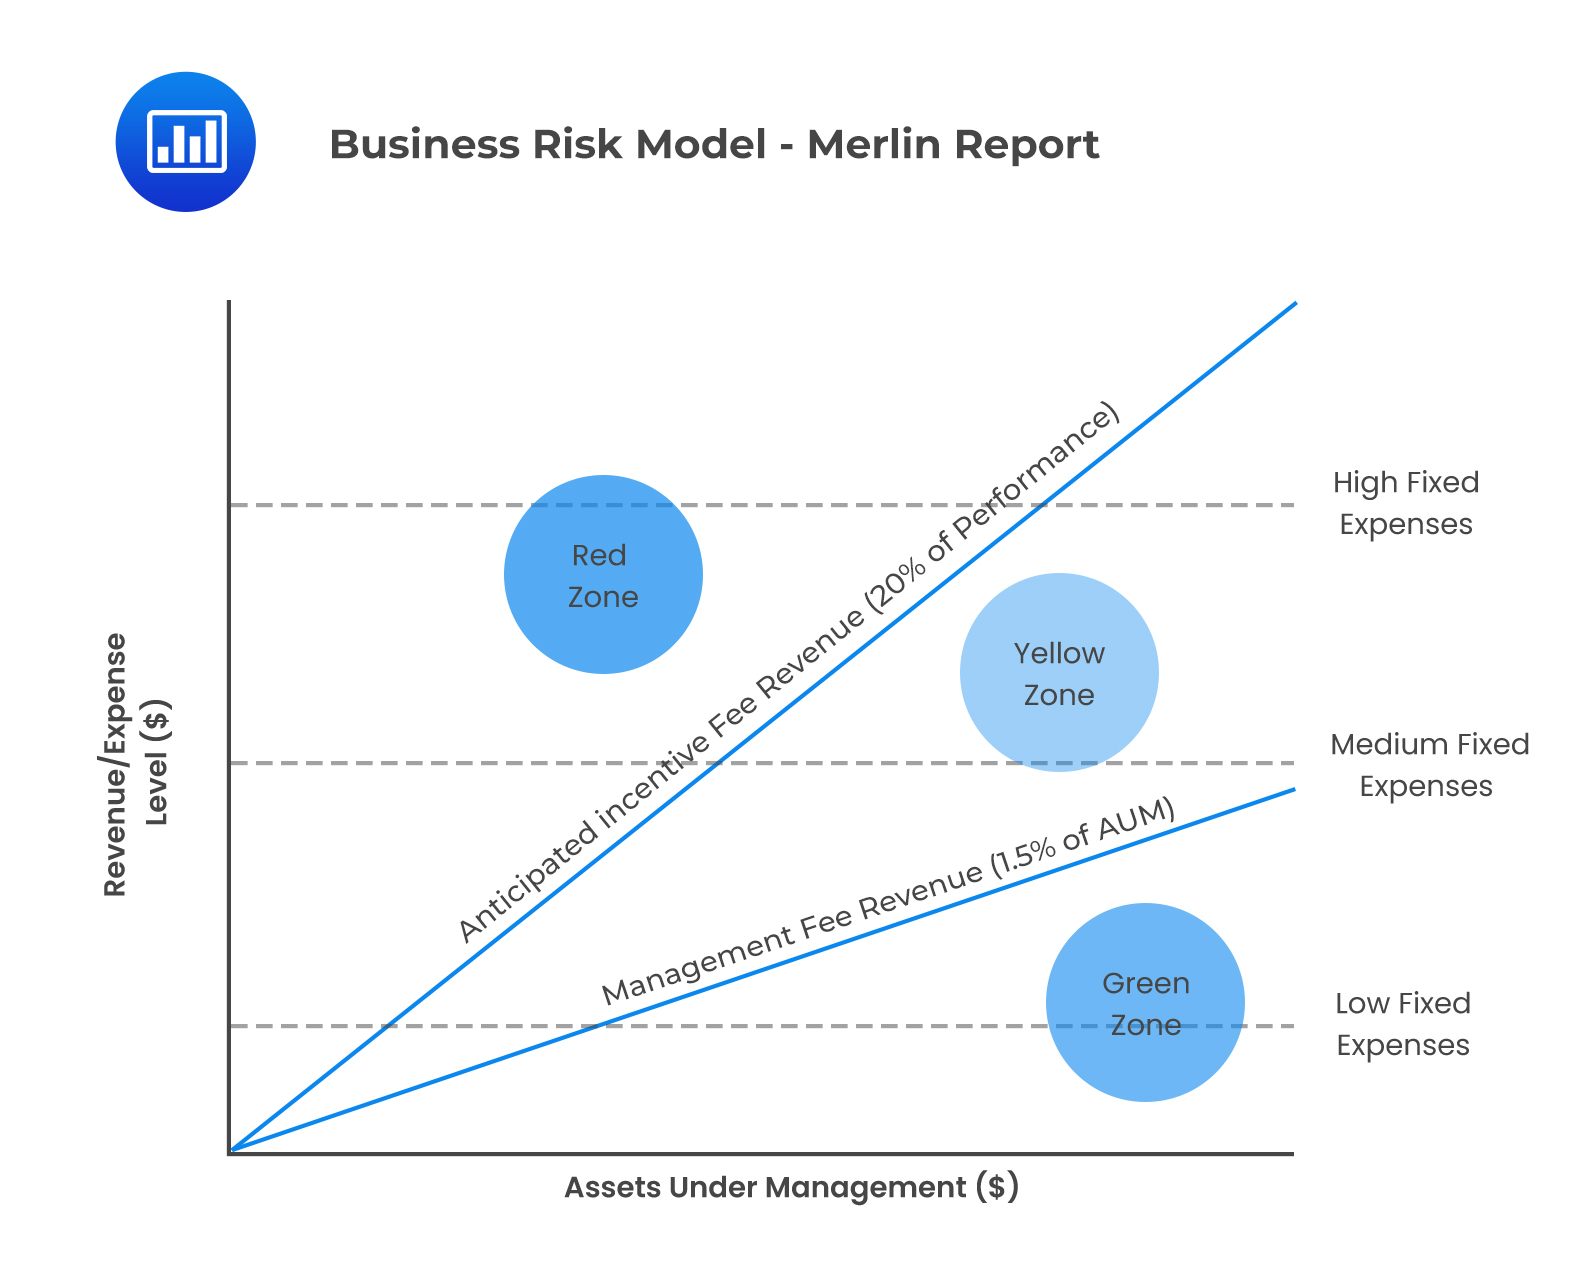 Business Risk Model - Merlin Report